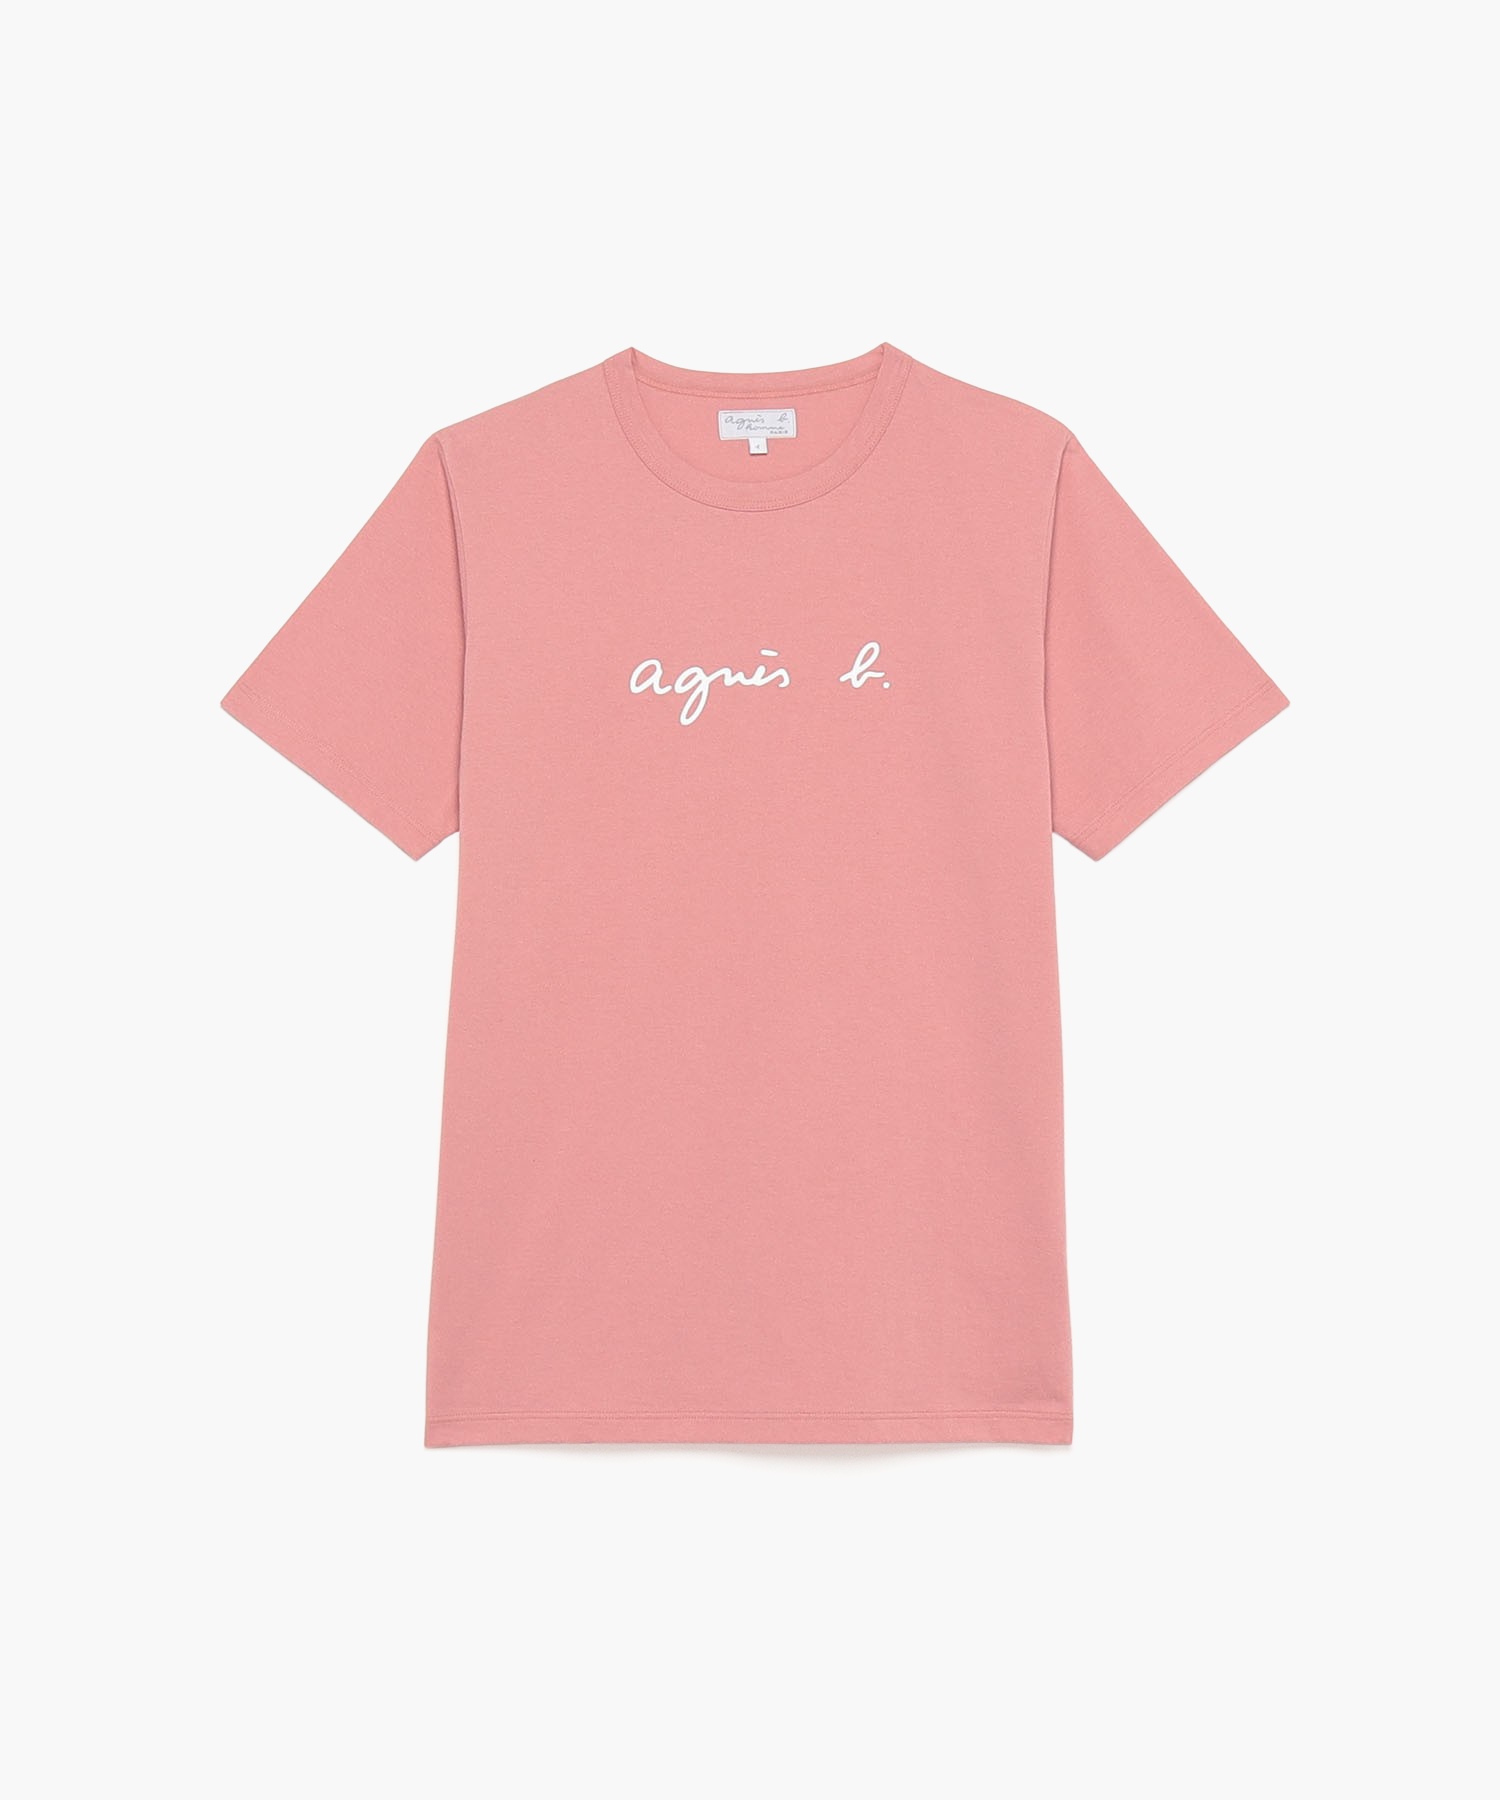 agnes b. S137 TS ロゴTシャツ 3